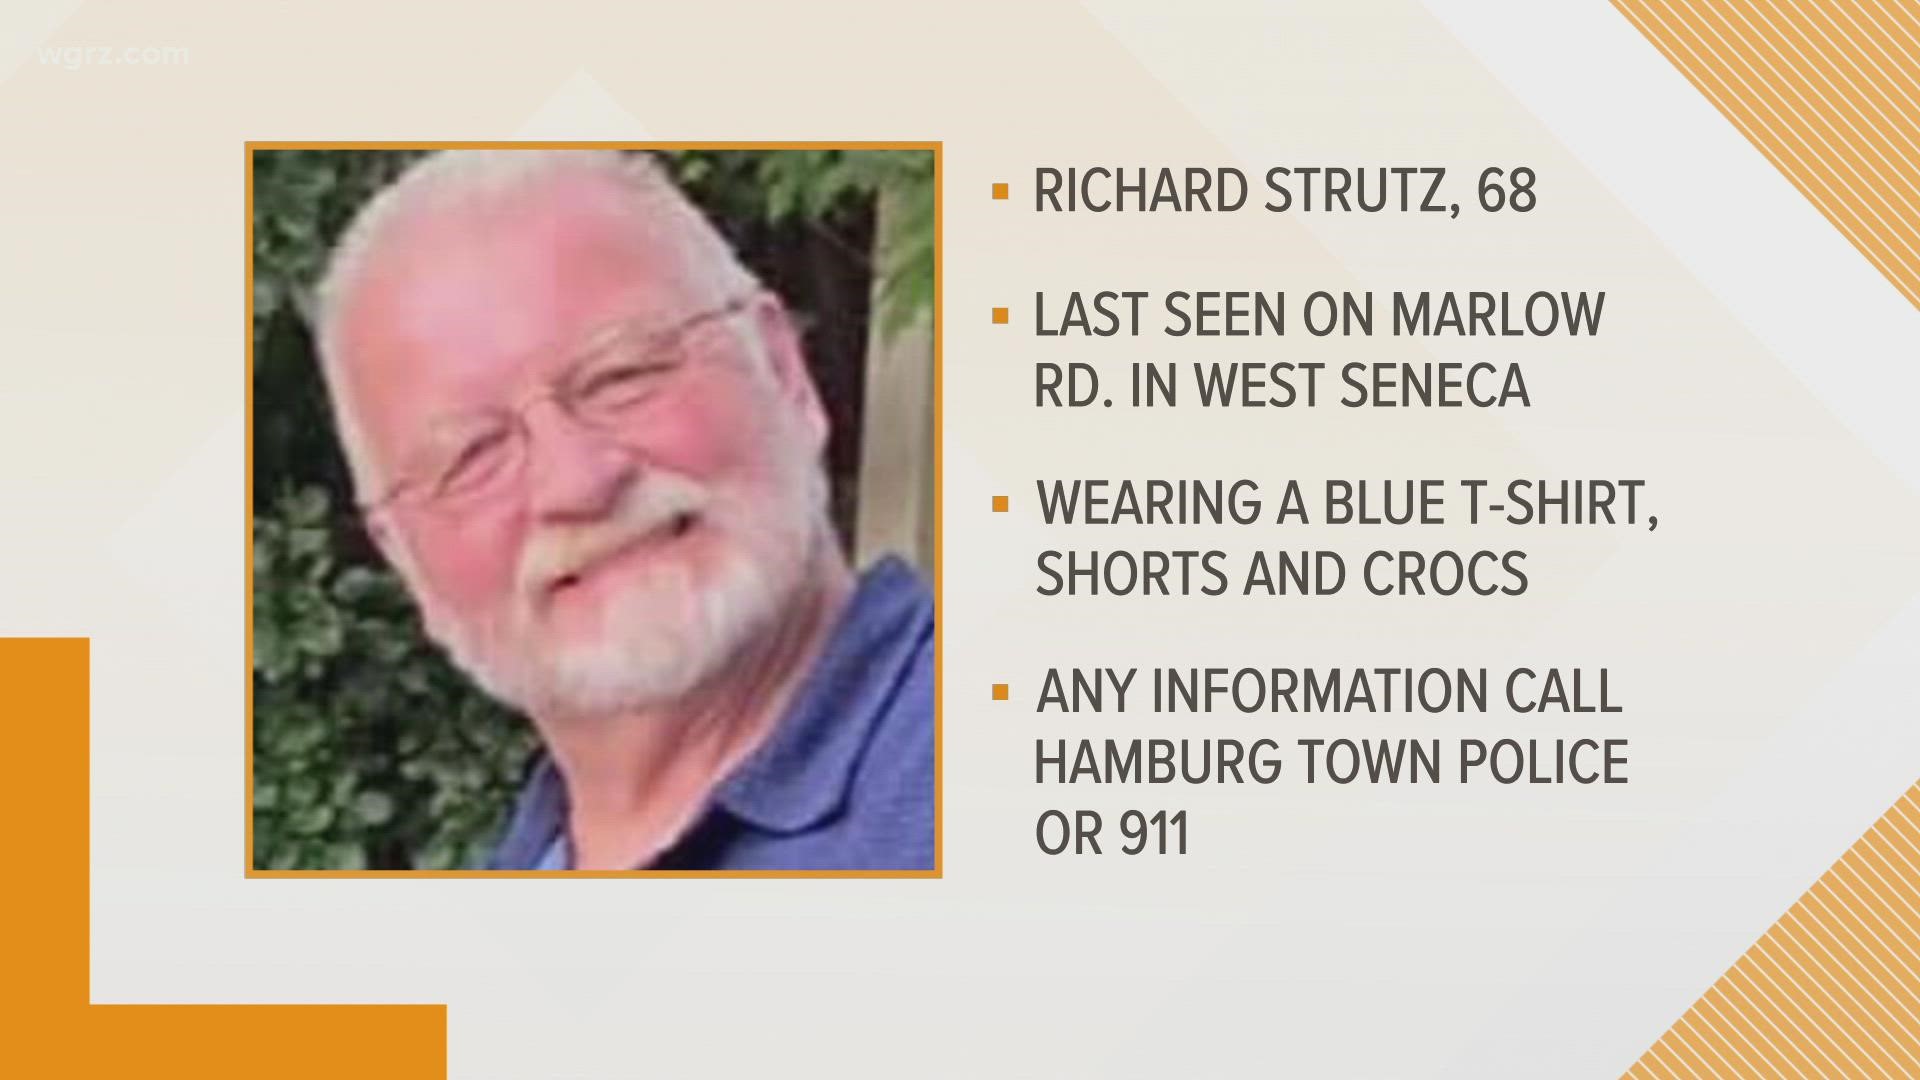 68-year-old Richard Strutz was last seen in West Seneca around 5:30 p.m. on Thursday.